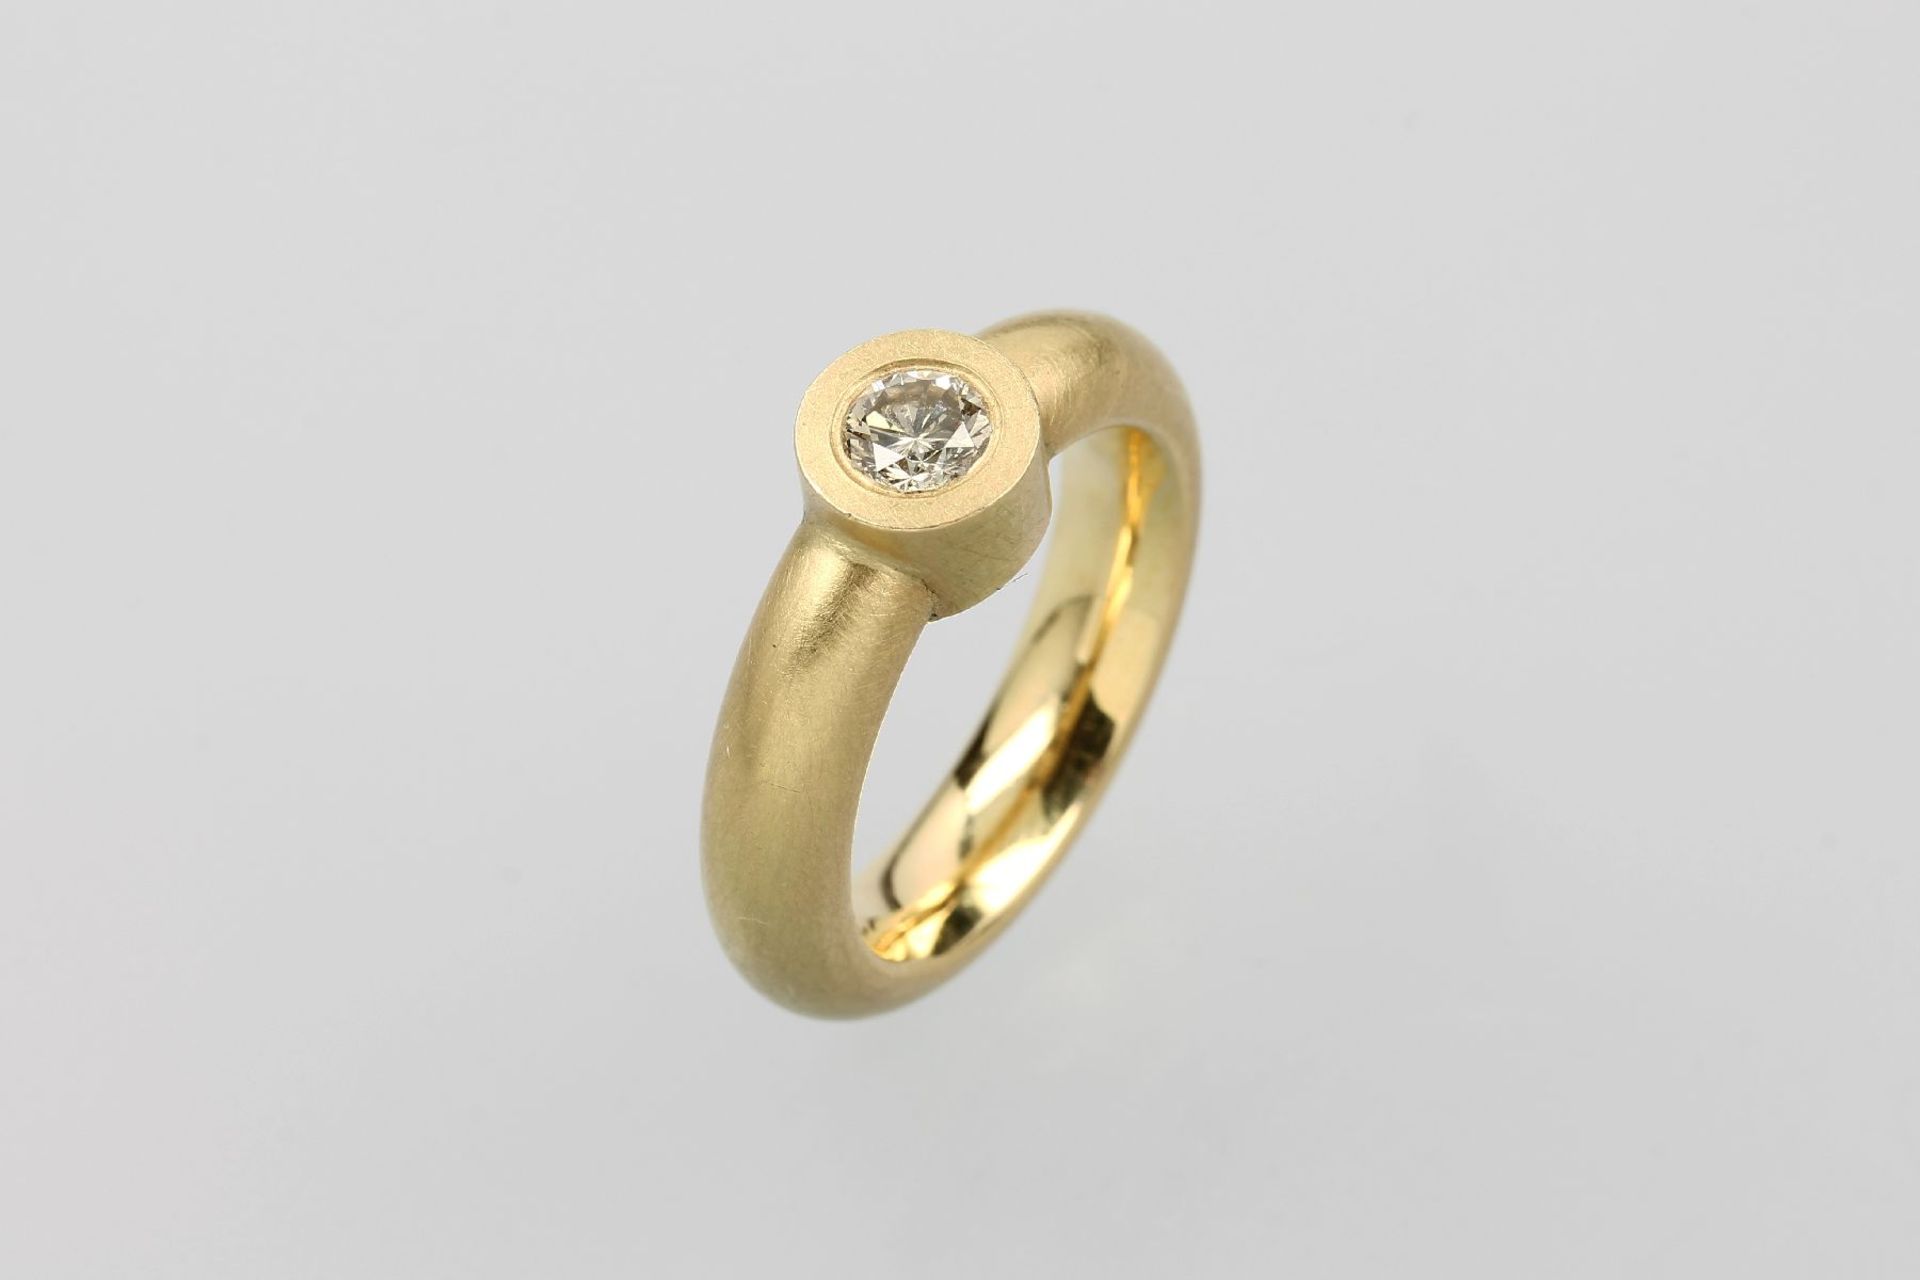 18 kt Gold Ring mit Brillant, GG 750/000, mittig Brillant ca. 0.30 ct get./p, erhaben gefasst,